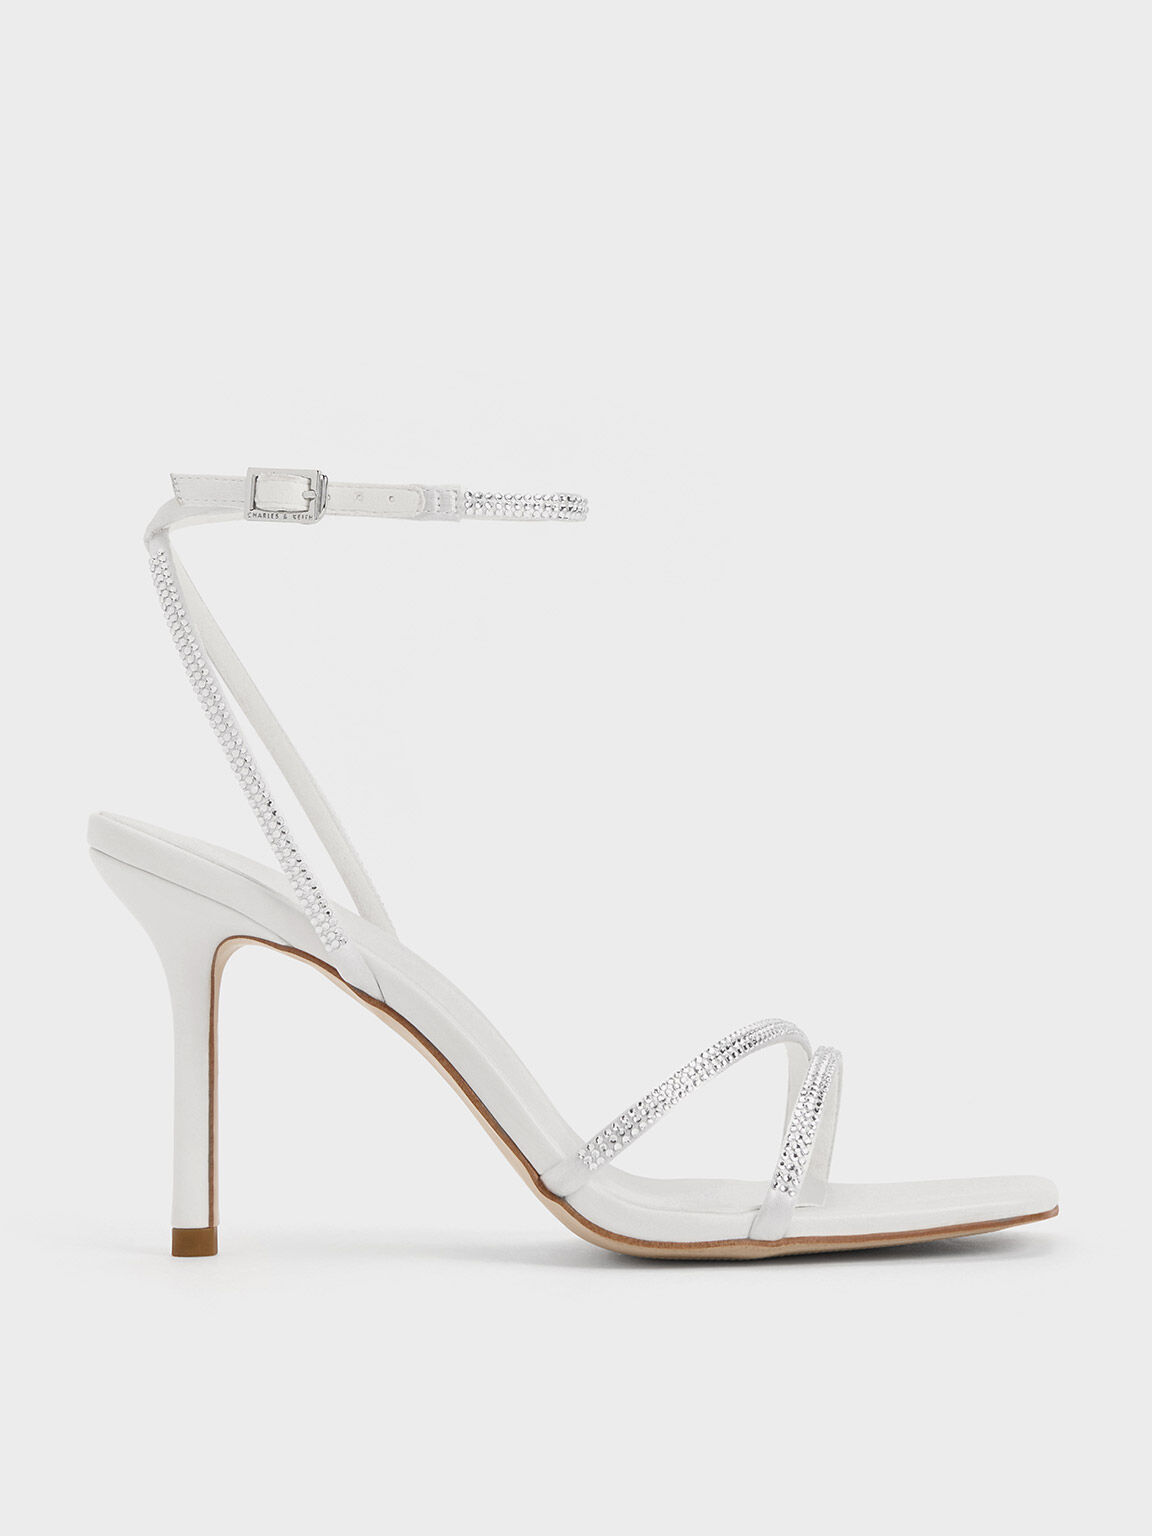 Sandal Stiletto-Heel Satin Crystal-Embellished, White, hi-res